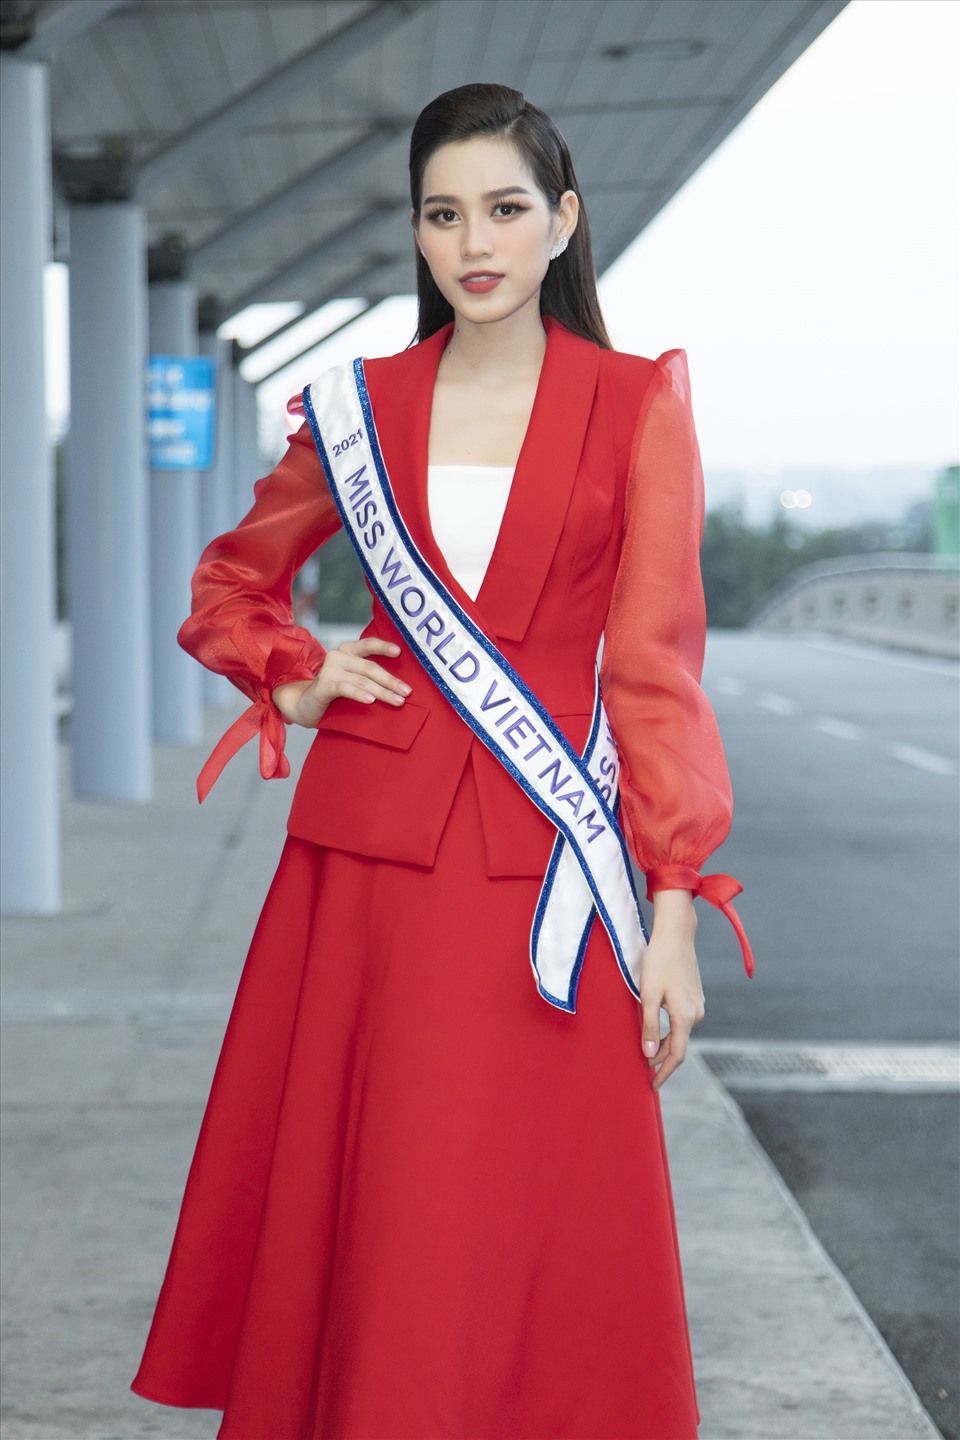 Ngày người đẹp xứ Thanh lên đường dự thi Miss World 2021 cũng chính là ngày kỷ niệm 1 năm đăng quang Hoa Hậu Việt Nam 2020. Sau nửa nhiệm kỳ, nàng hậu xứ Thanh cũng dần trưởng thành hơn khi tự tin một mình “mang chuông đi đánh xứ người”.